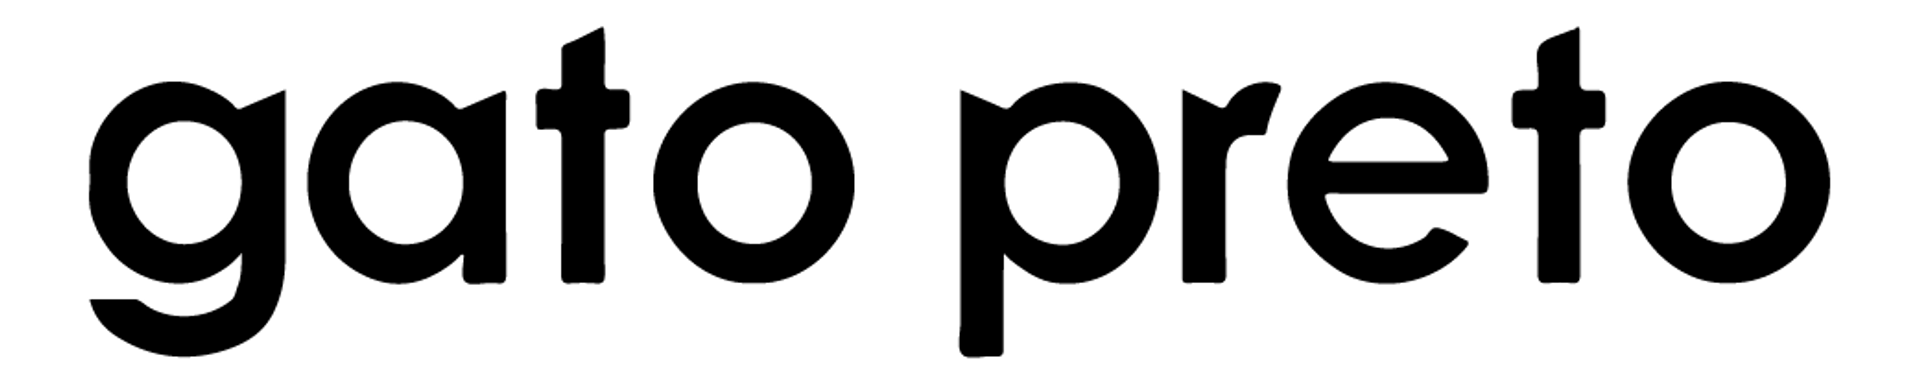 Gato Preto logo